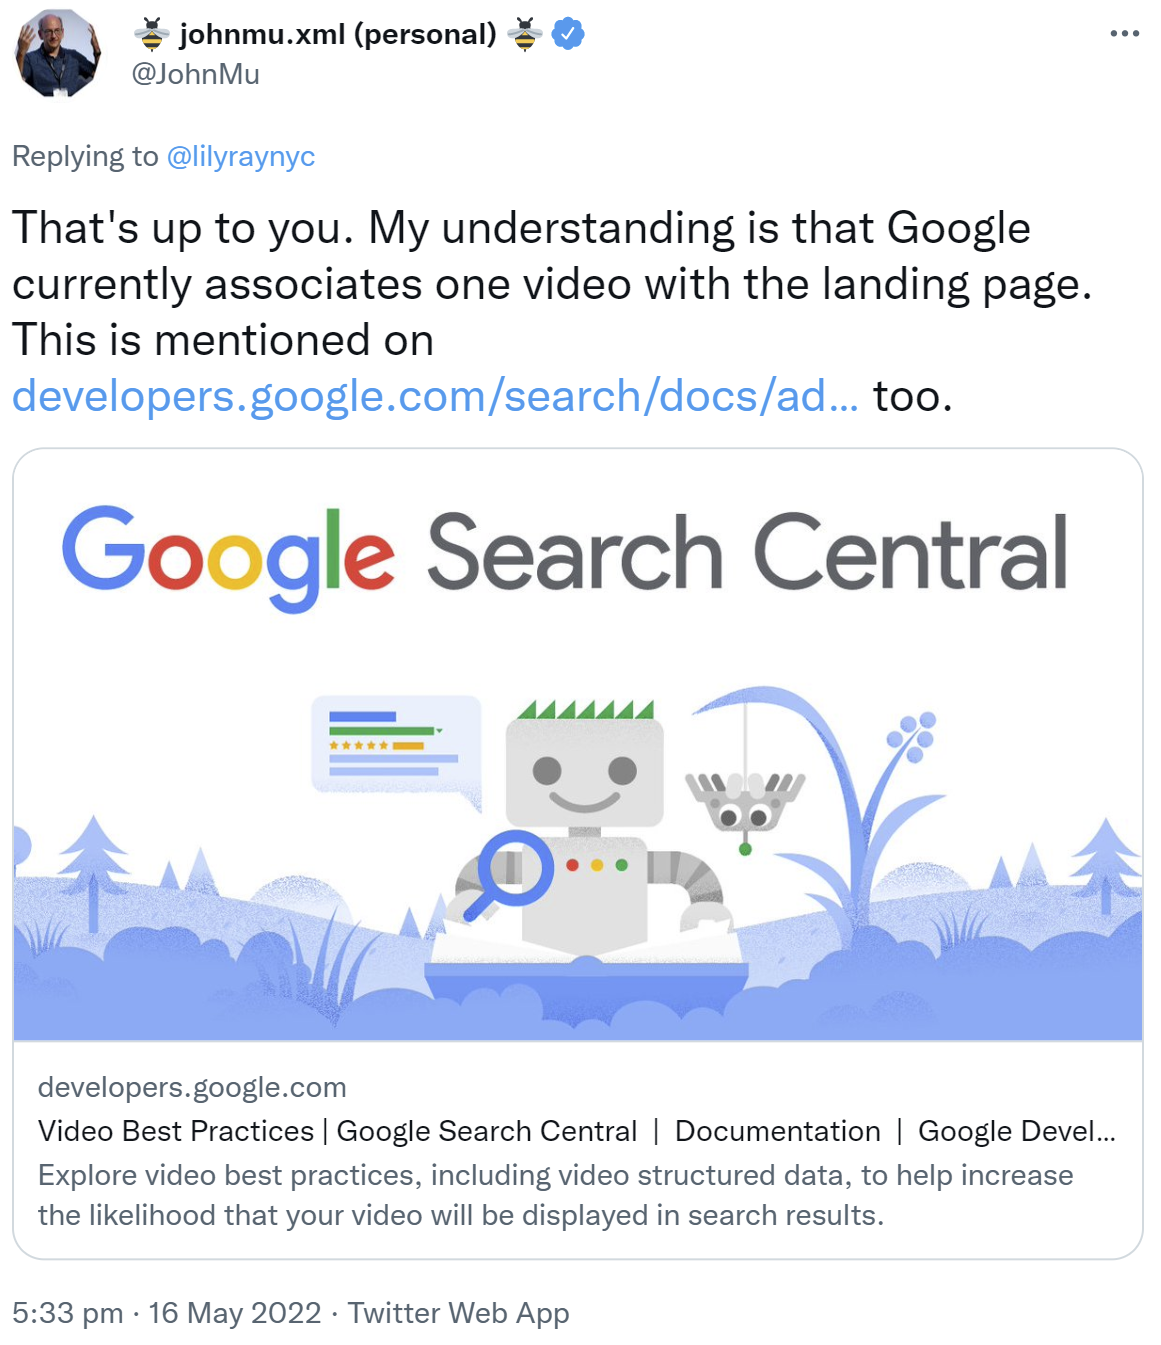 Google assoziiert nur jeweils ein Video mit einer Seite bzw. Landing Page